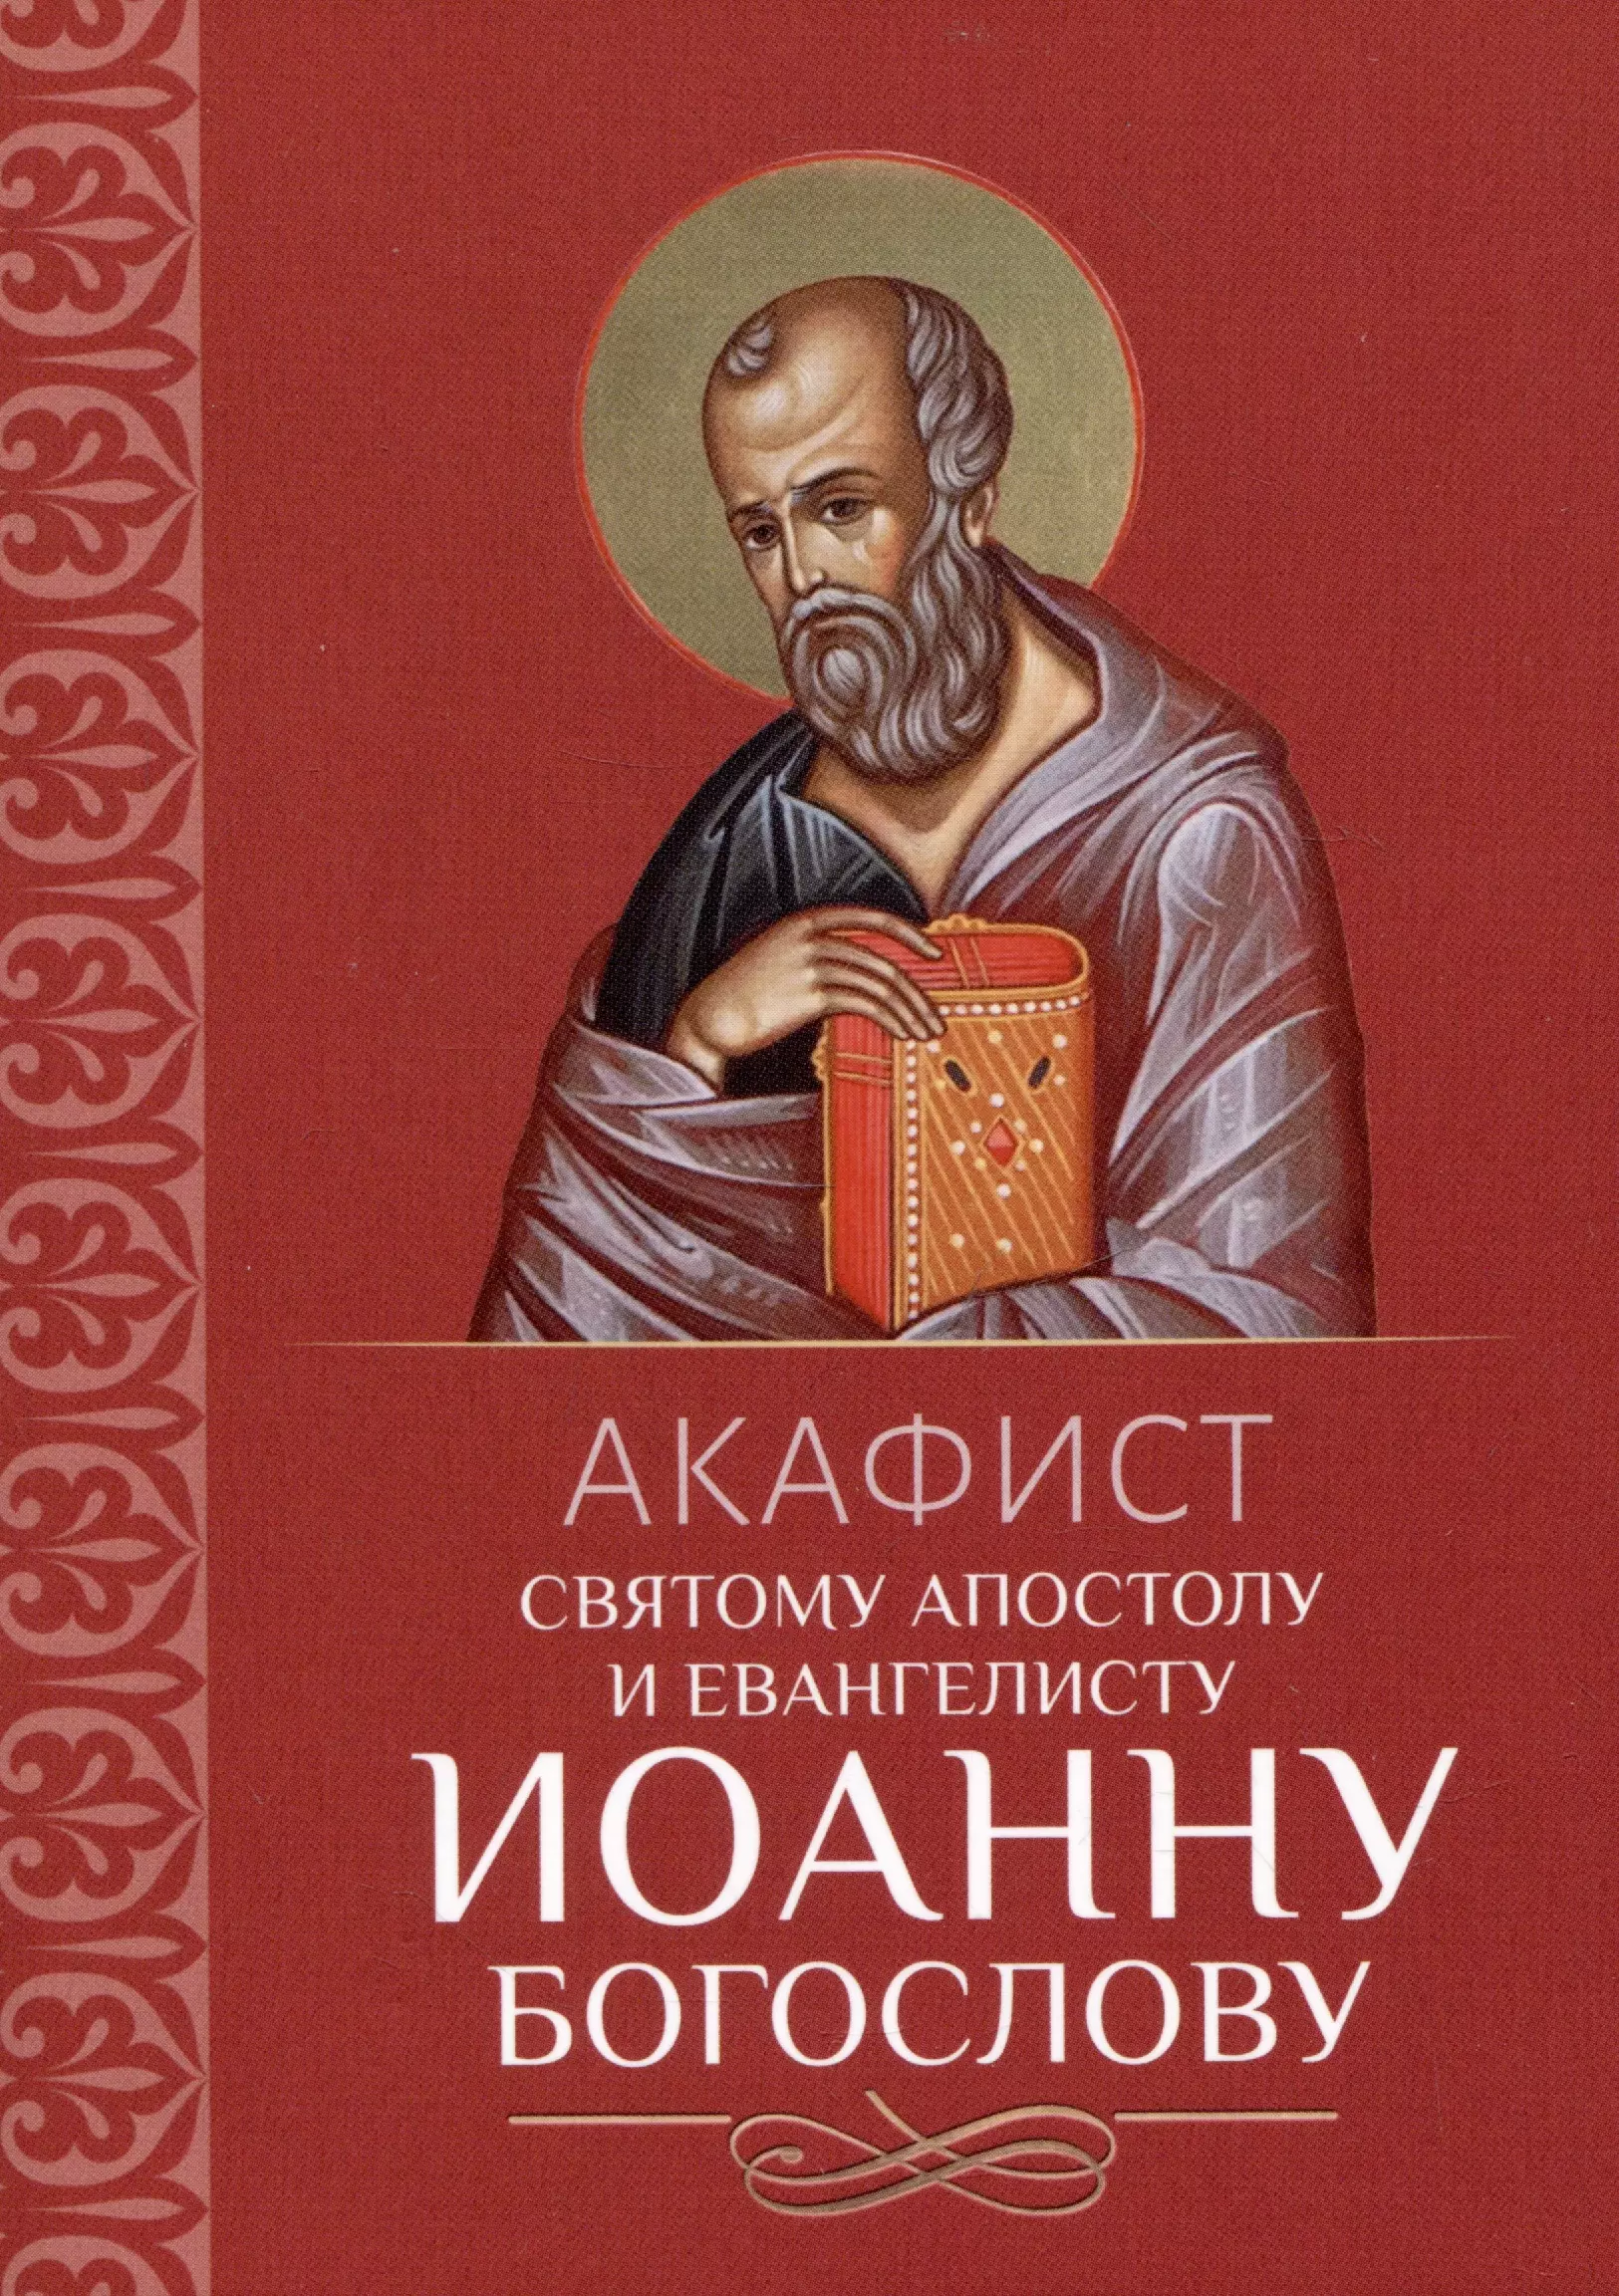 Акафист святому апостолу и евангелисту Иоанну Богослову